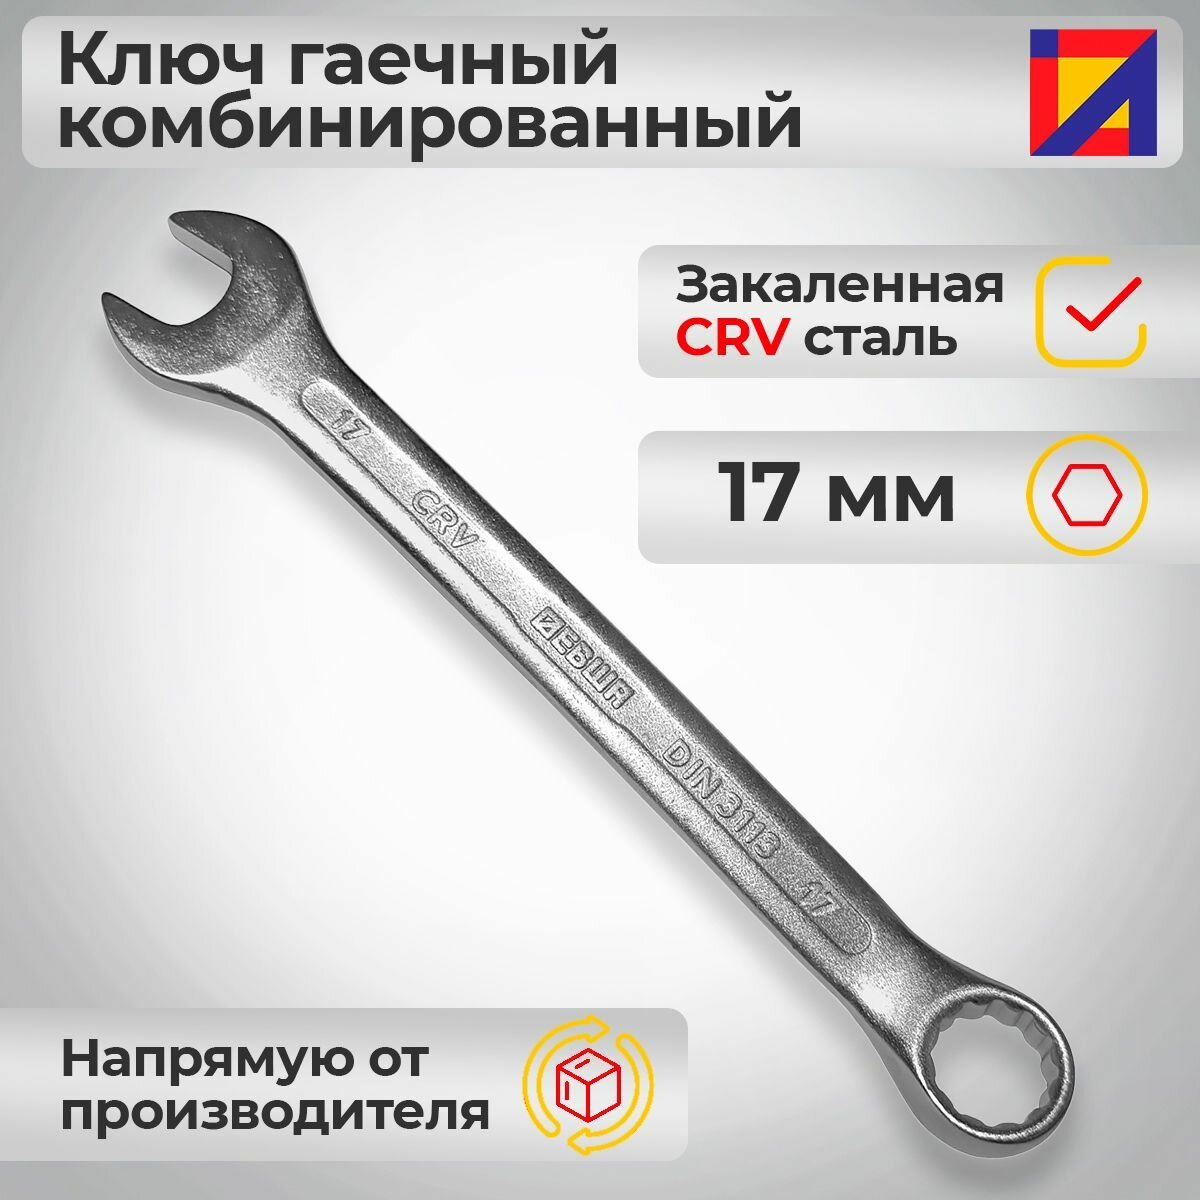 Ключ гаечный комбинированный 17 мм. / Левша